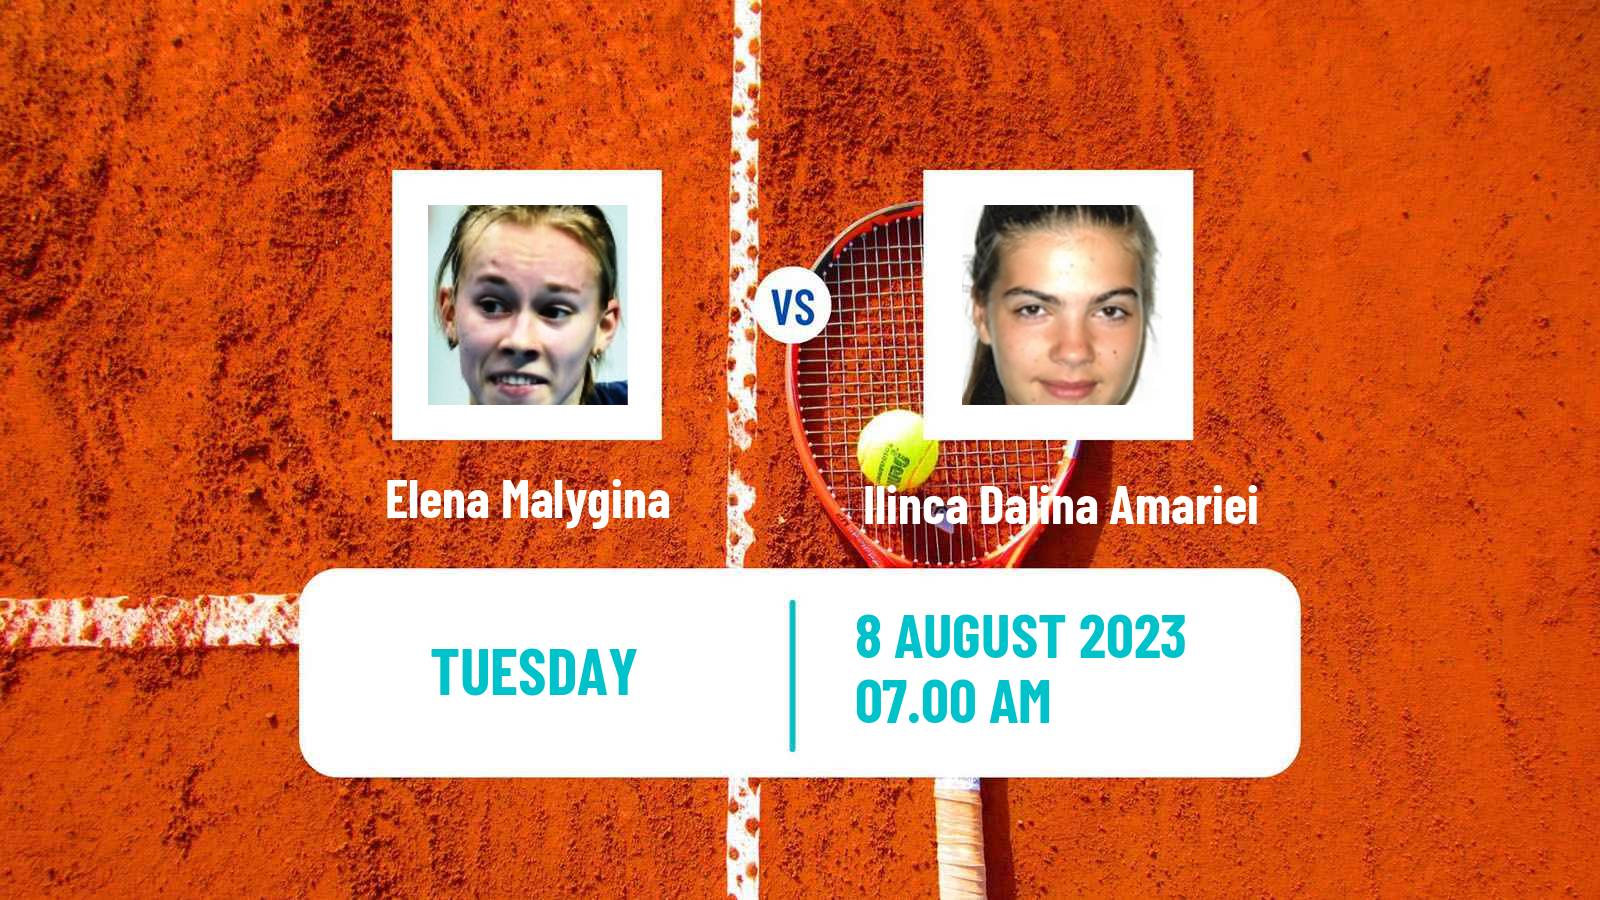 Tennis ITF W25 Osijek 2 Women Elena Malygina - Ilinca Dalina Amariei